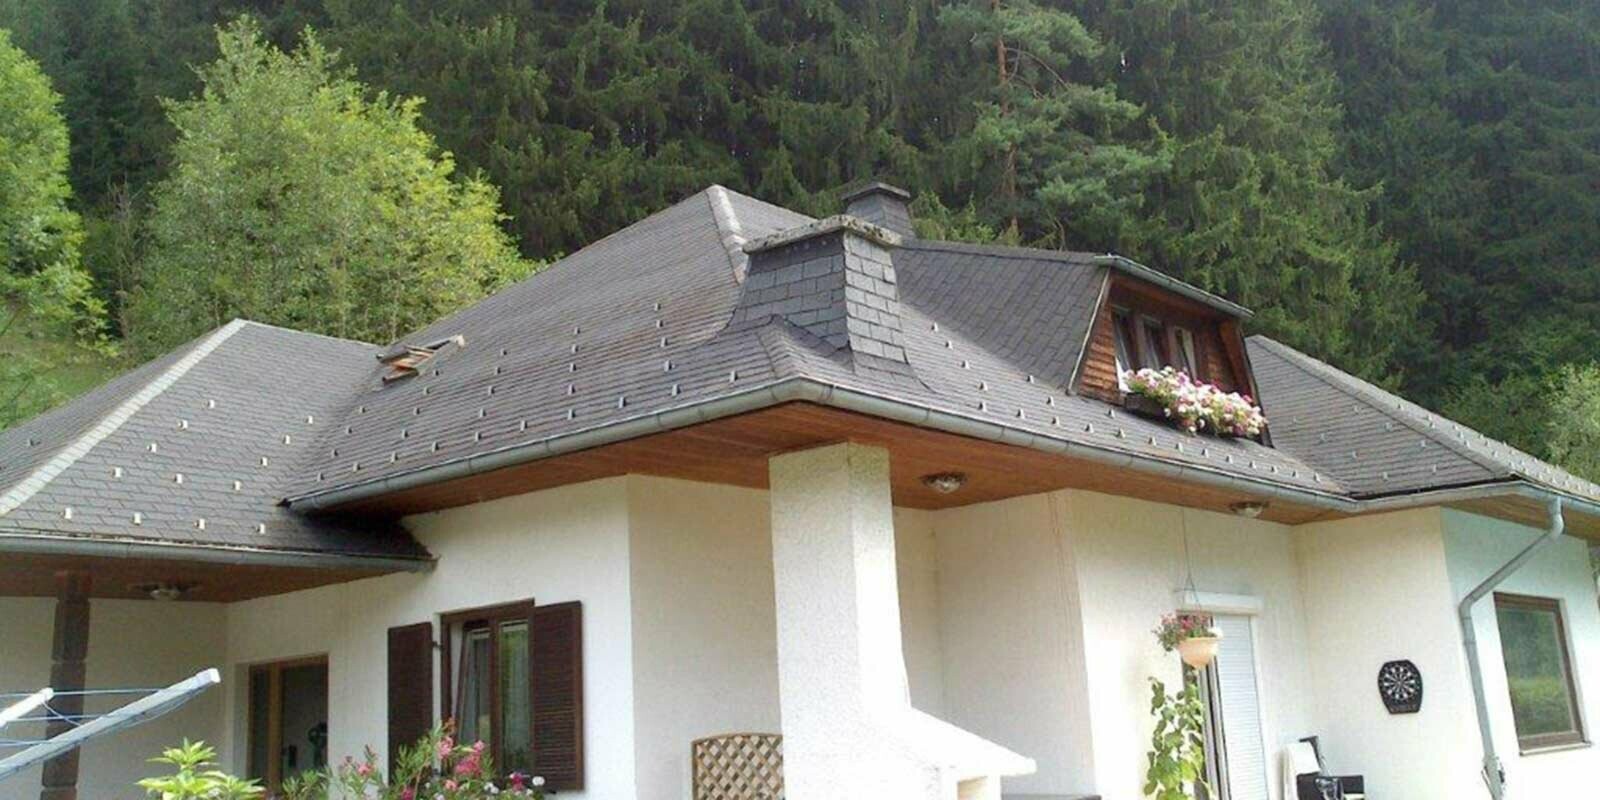 Maison individuelle avec toit à croupes avant la rénovation de toiture à l’aide de tuiles PREFA, lucarne en forme de trapèze incluse